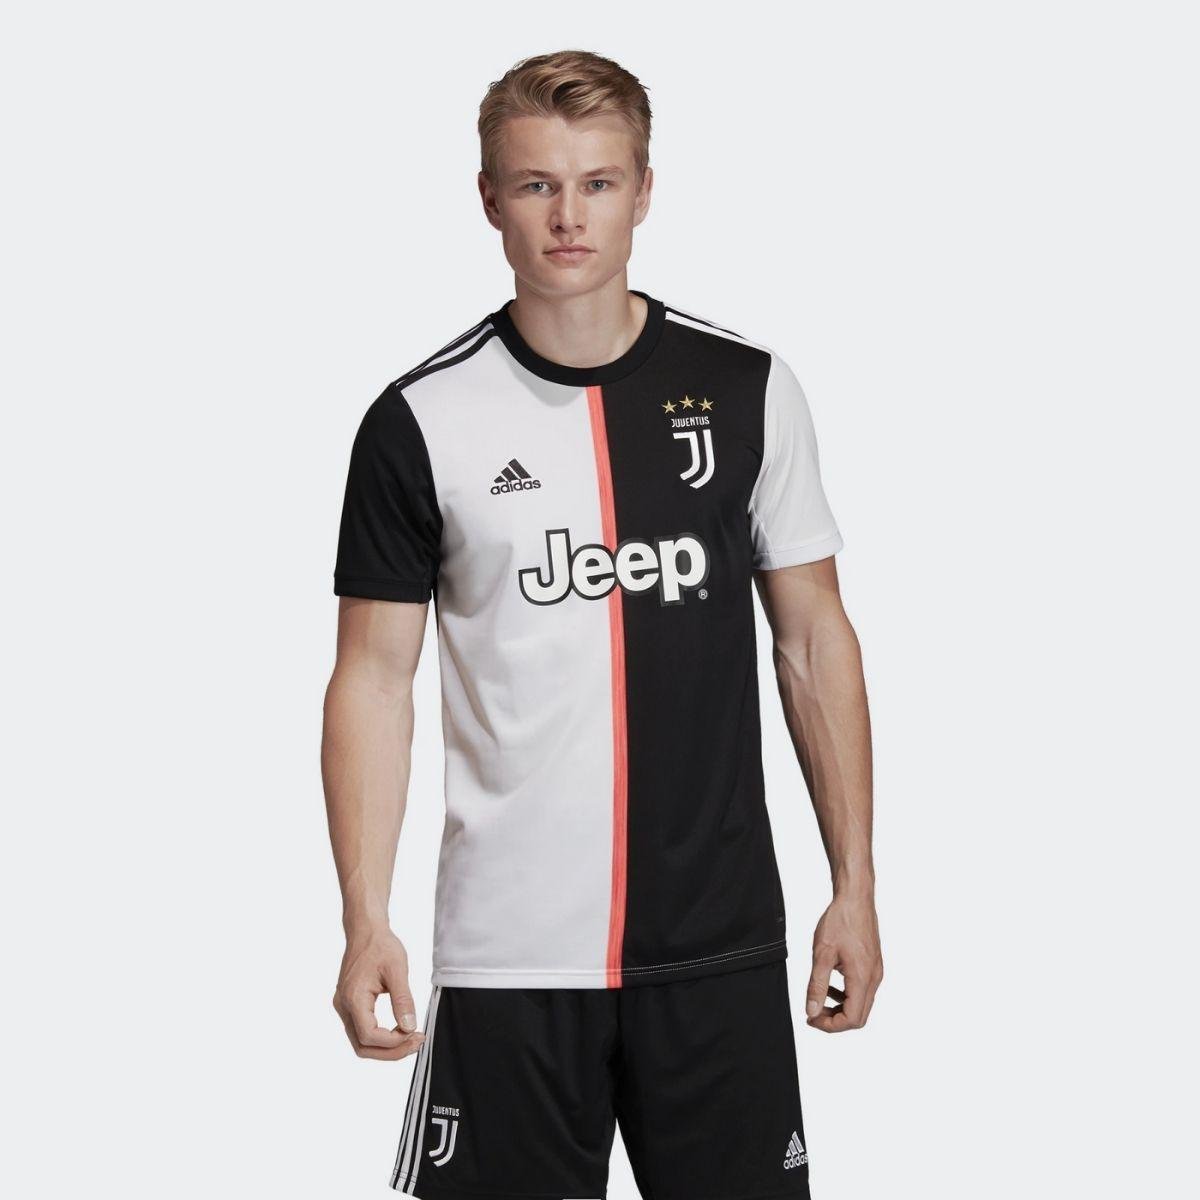 T-Shirt Adidas Juventus Gara Home 2019/20 Uomo - DW5455 